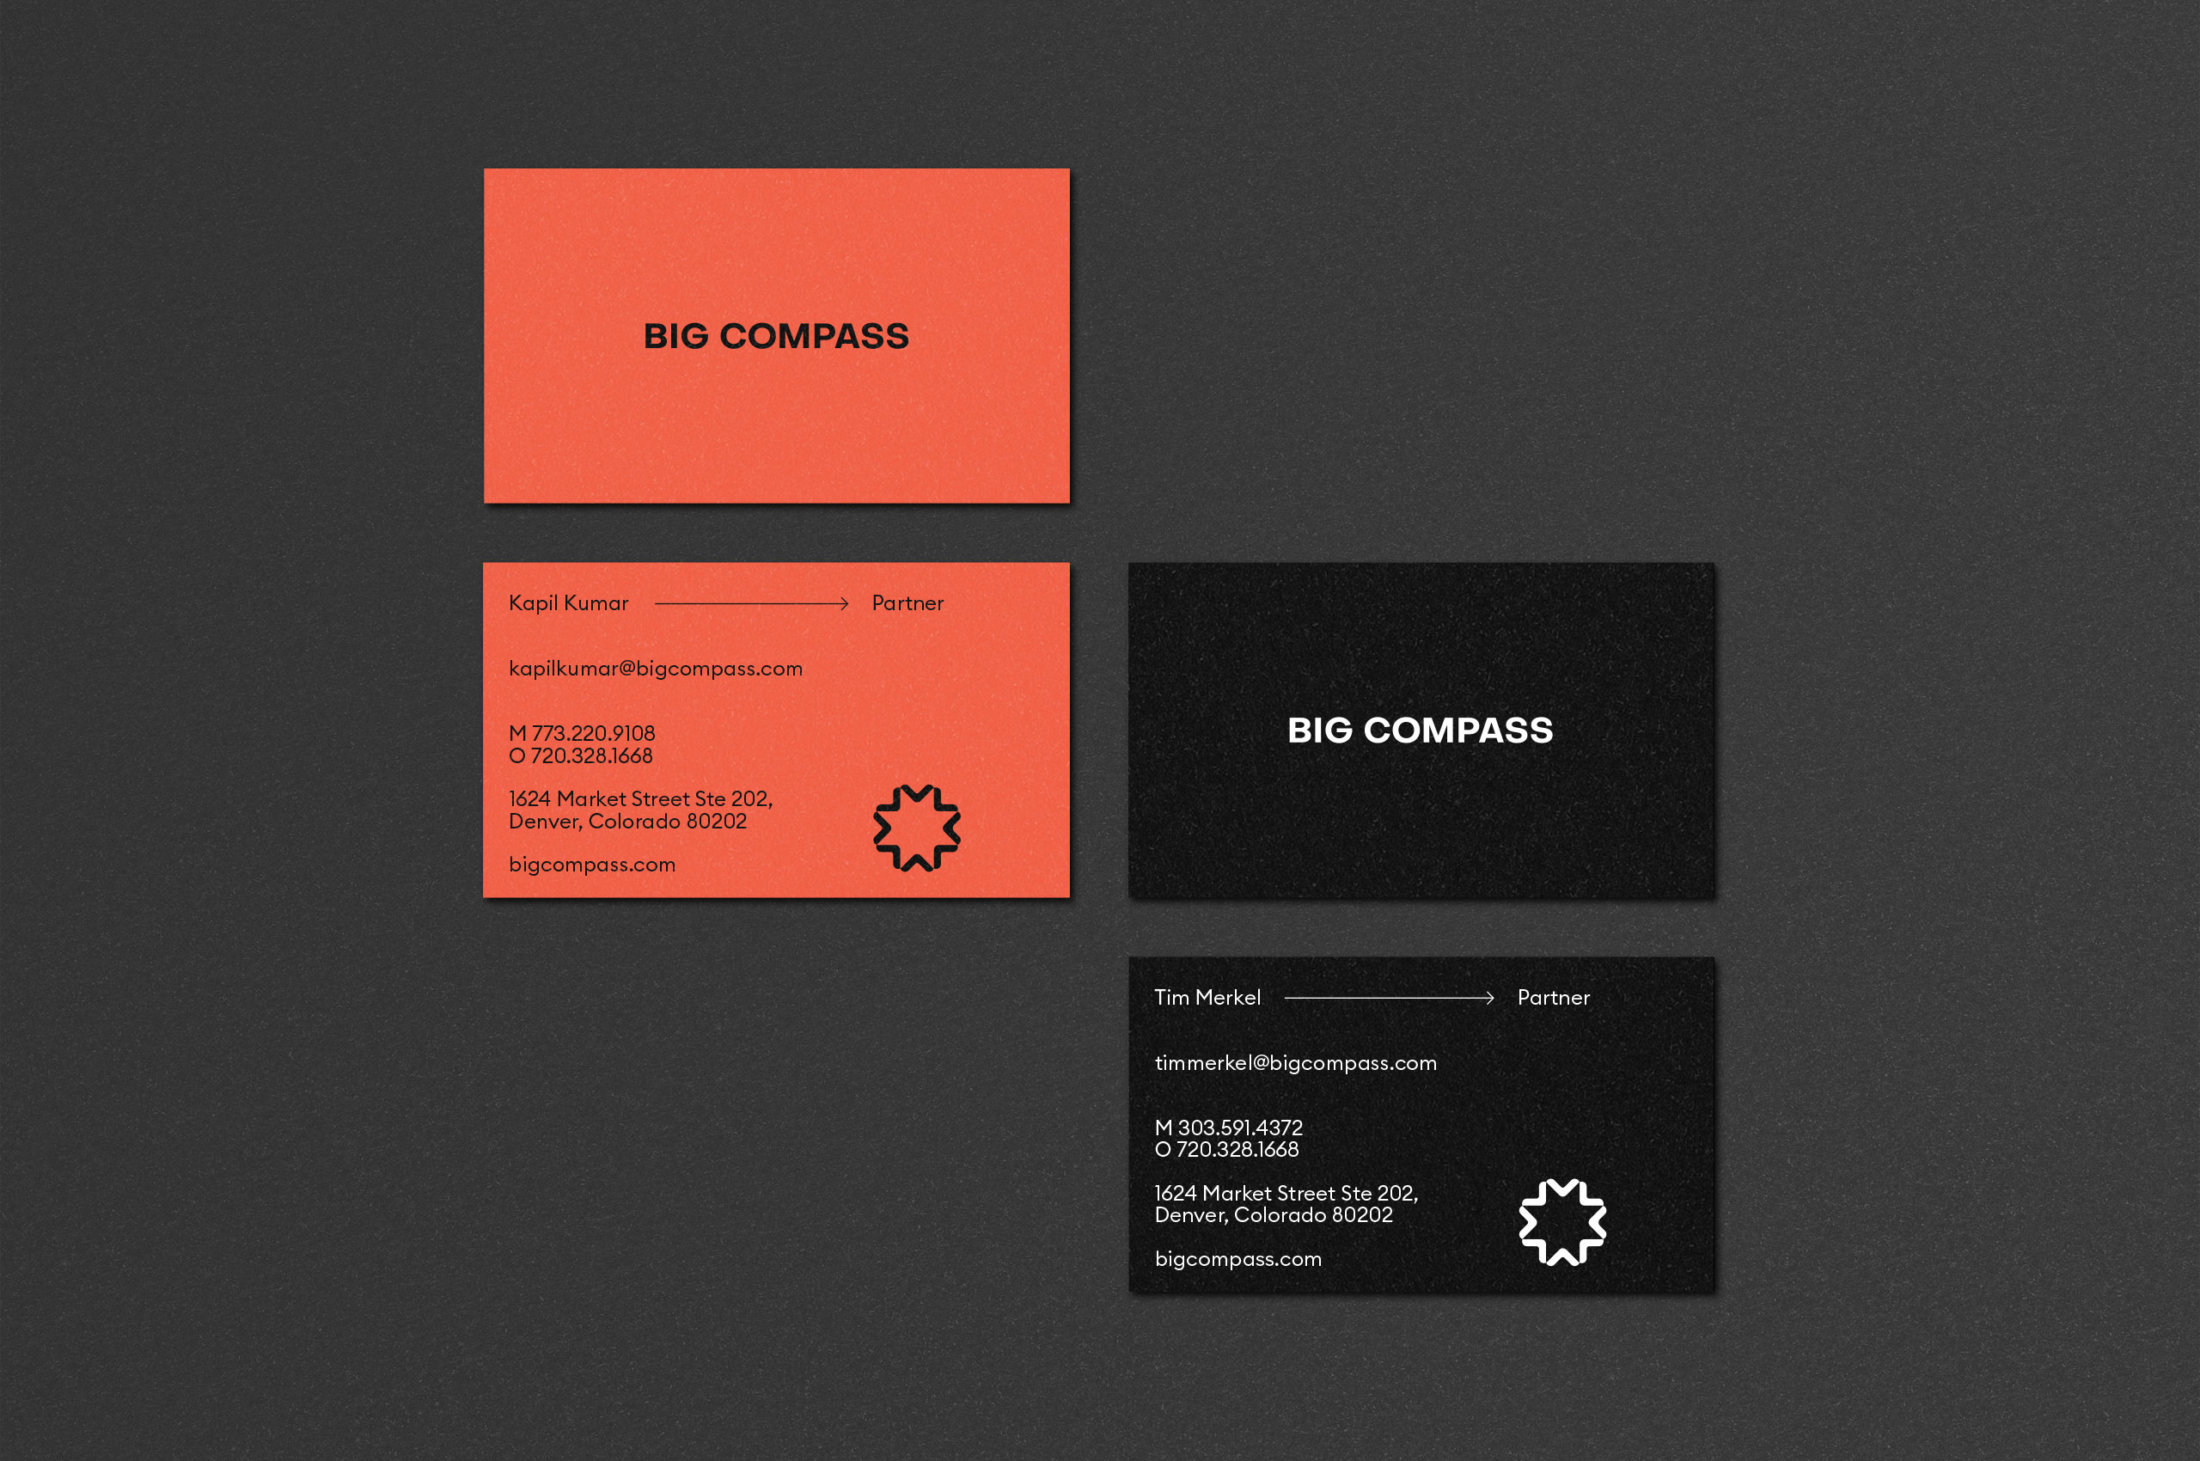 数据集成商Big Compass品牌形象设计